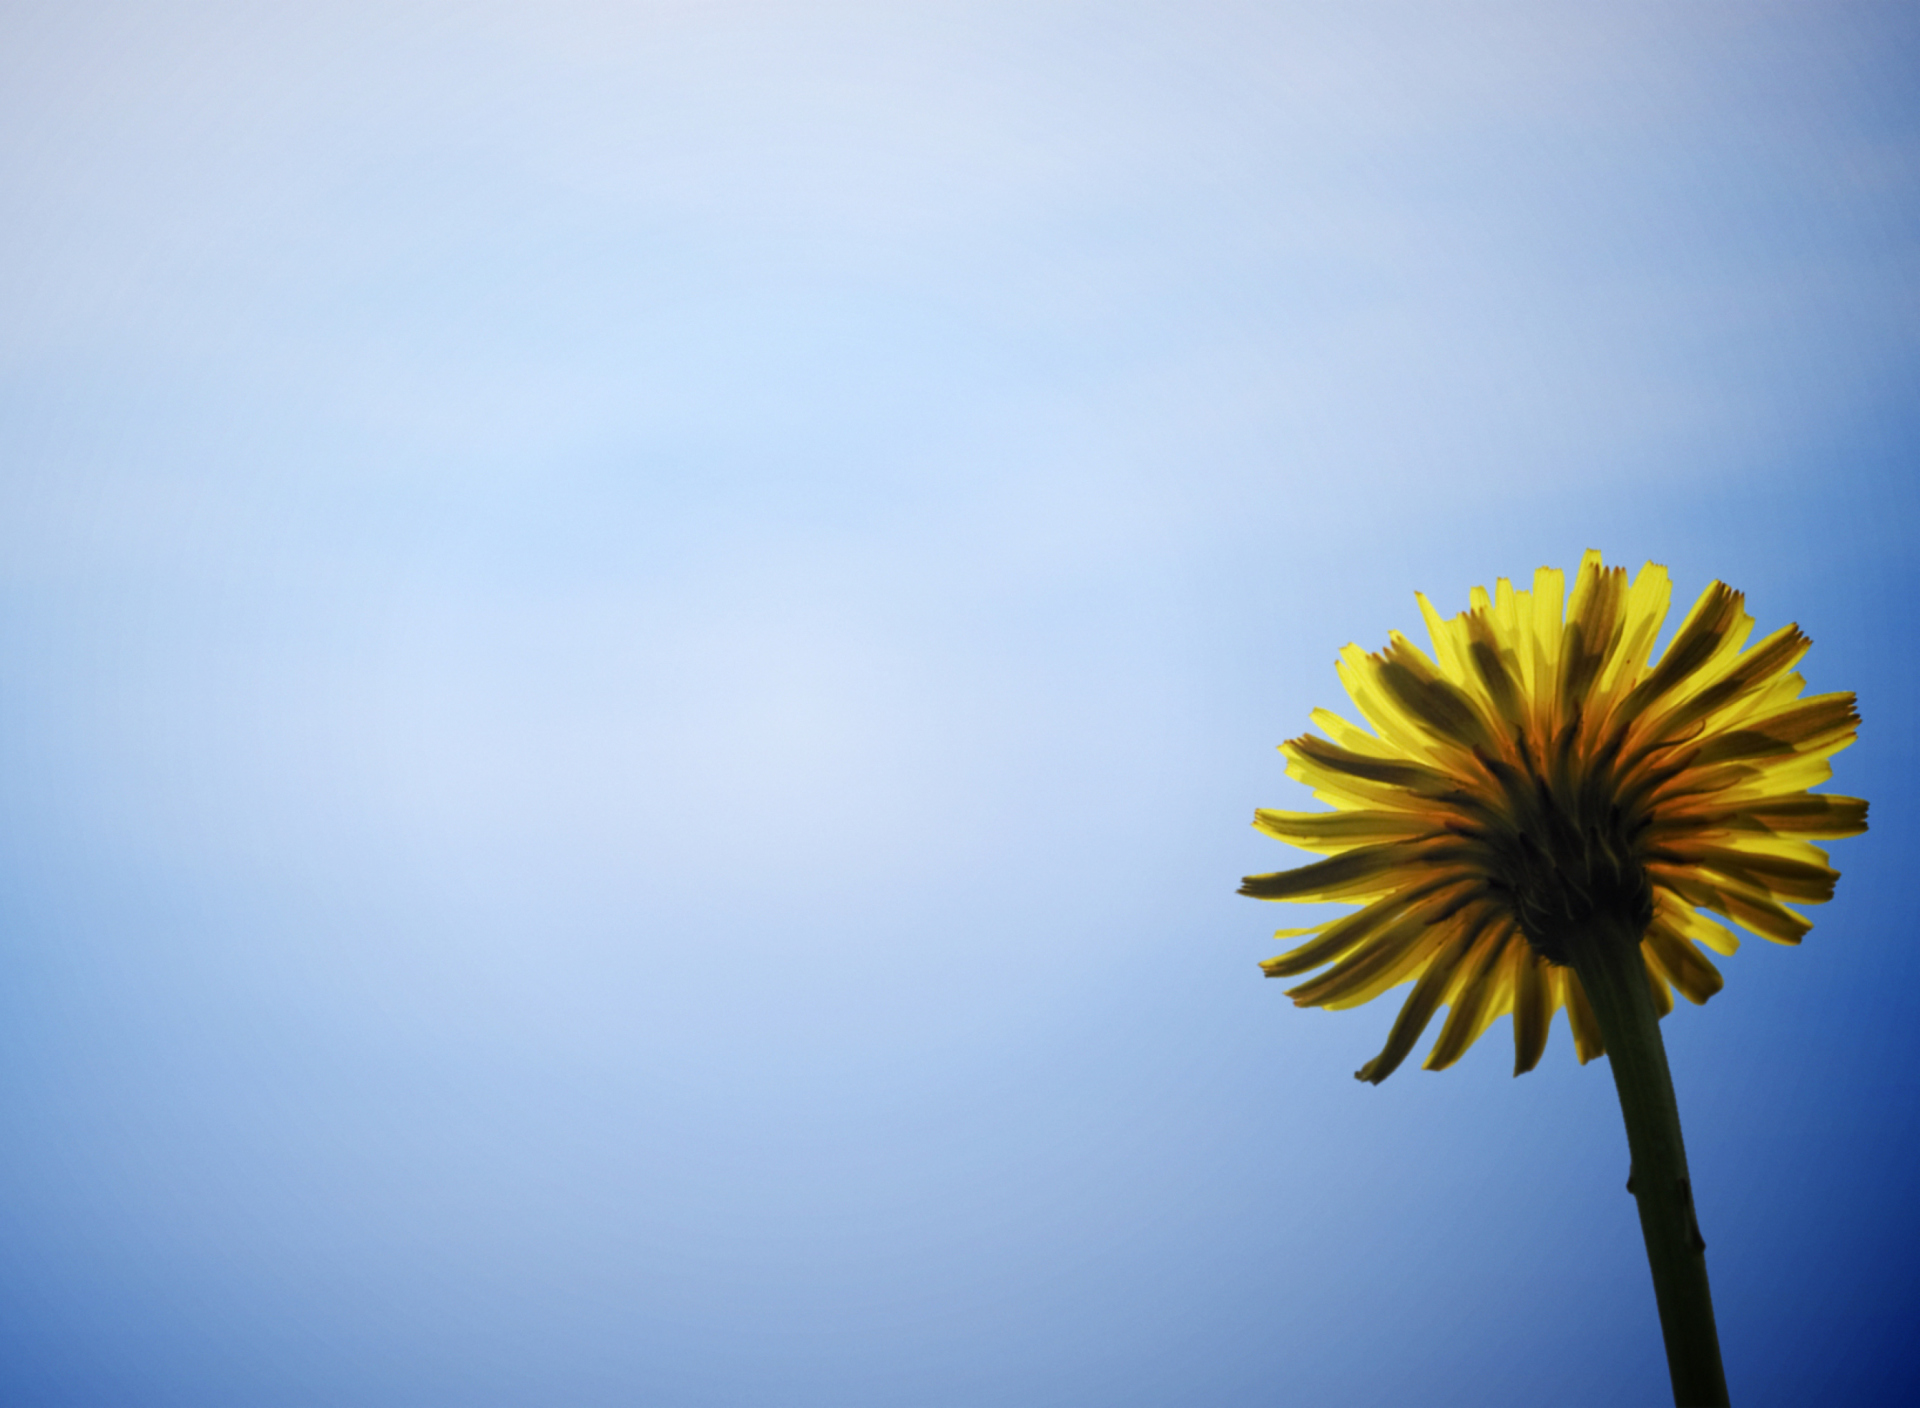 Обои Yellow Dandelion On Blue Sky 1920x1408